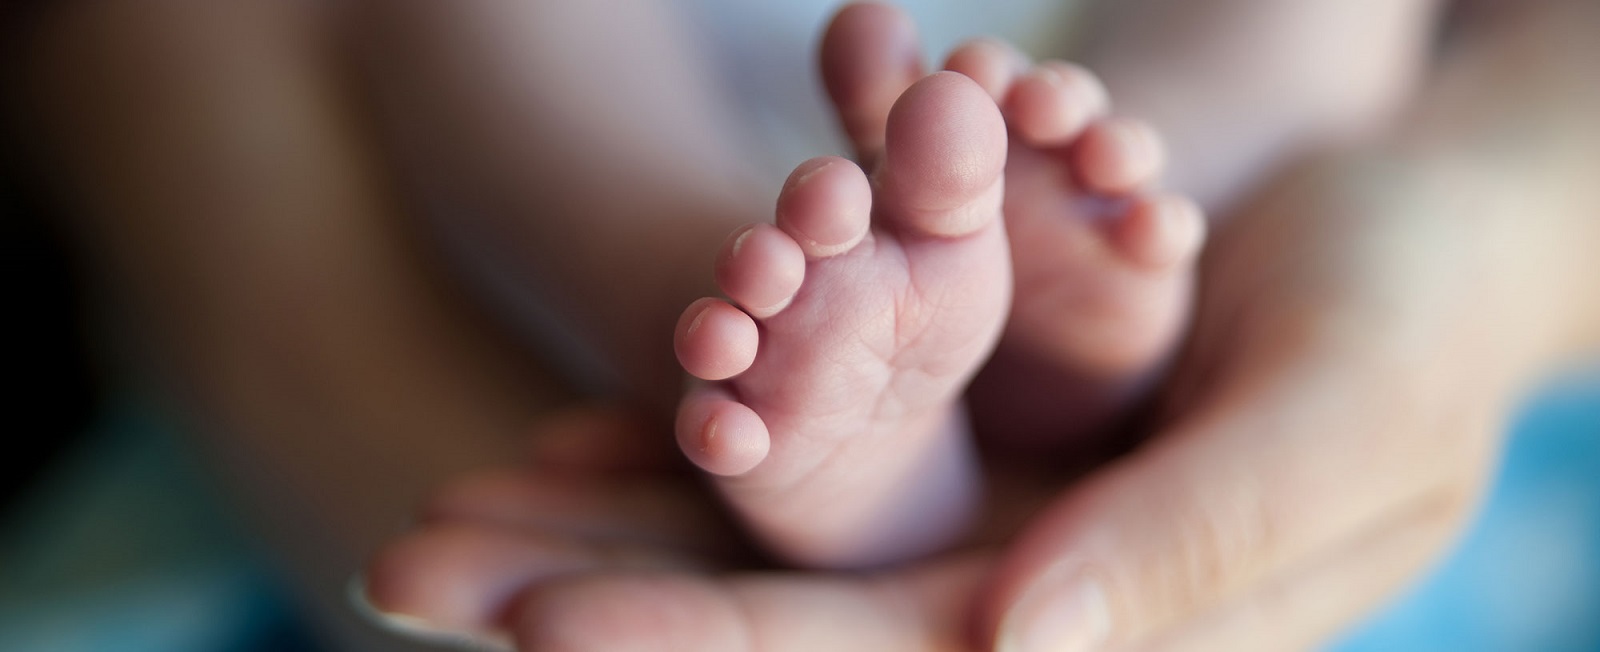 reproducción asistida - pies de bebés